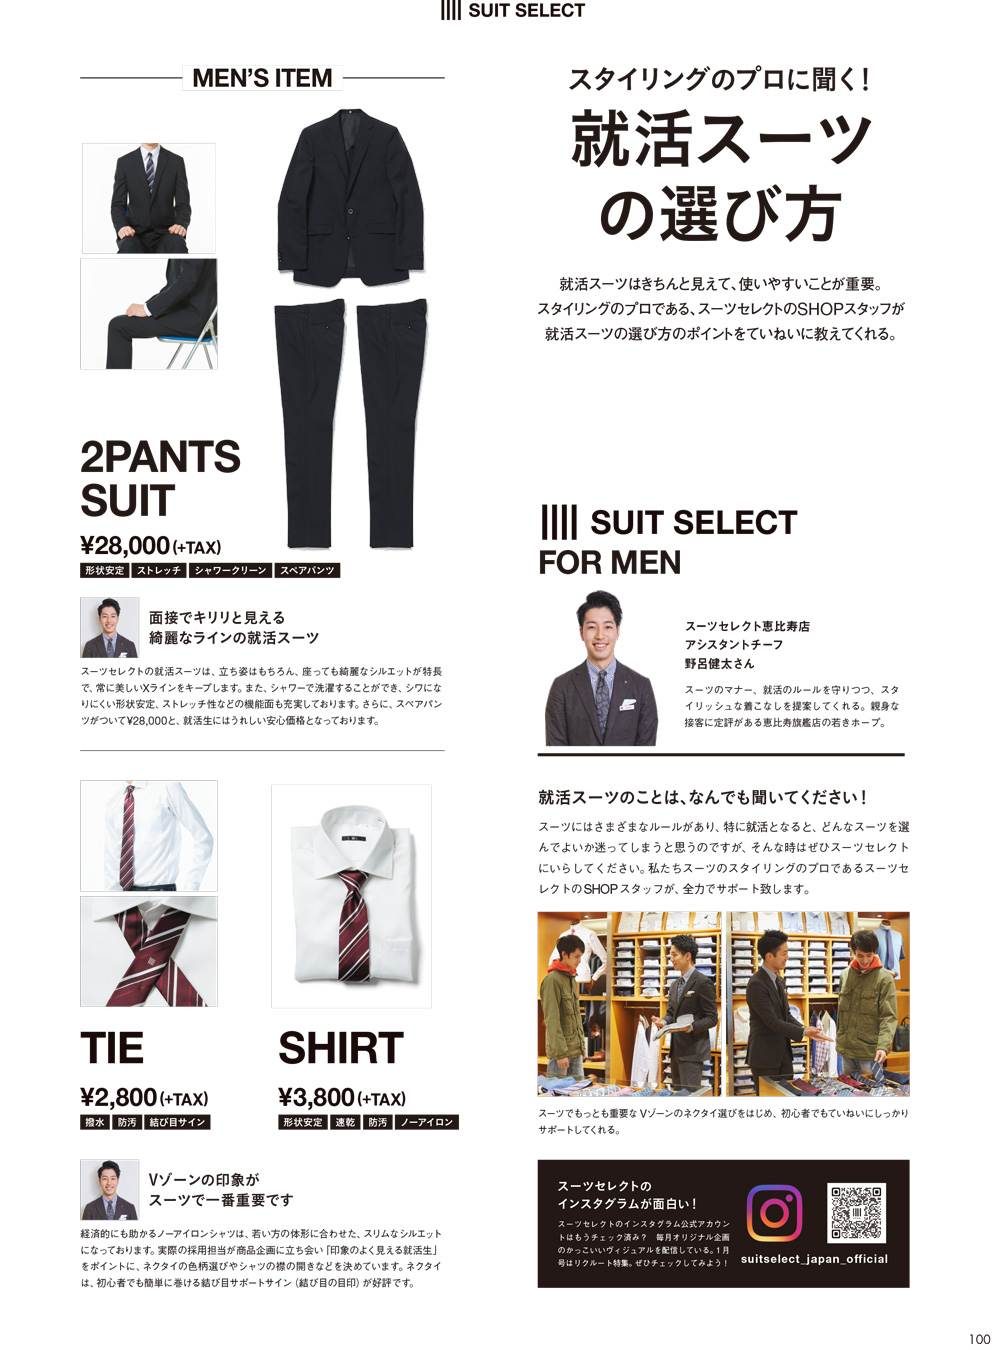 就活スーツ×SUIT SELECT | INFORMATION | SUIT SELECT | スーツセレクト公式ブランドサイト